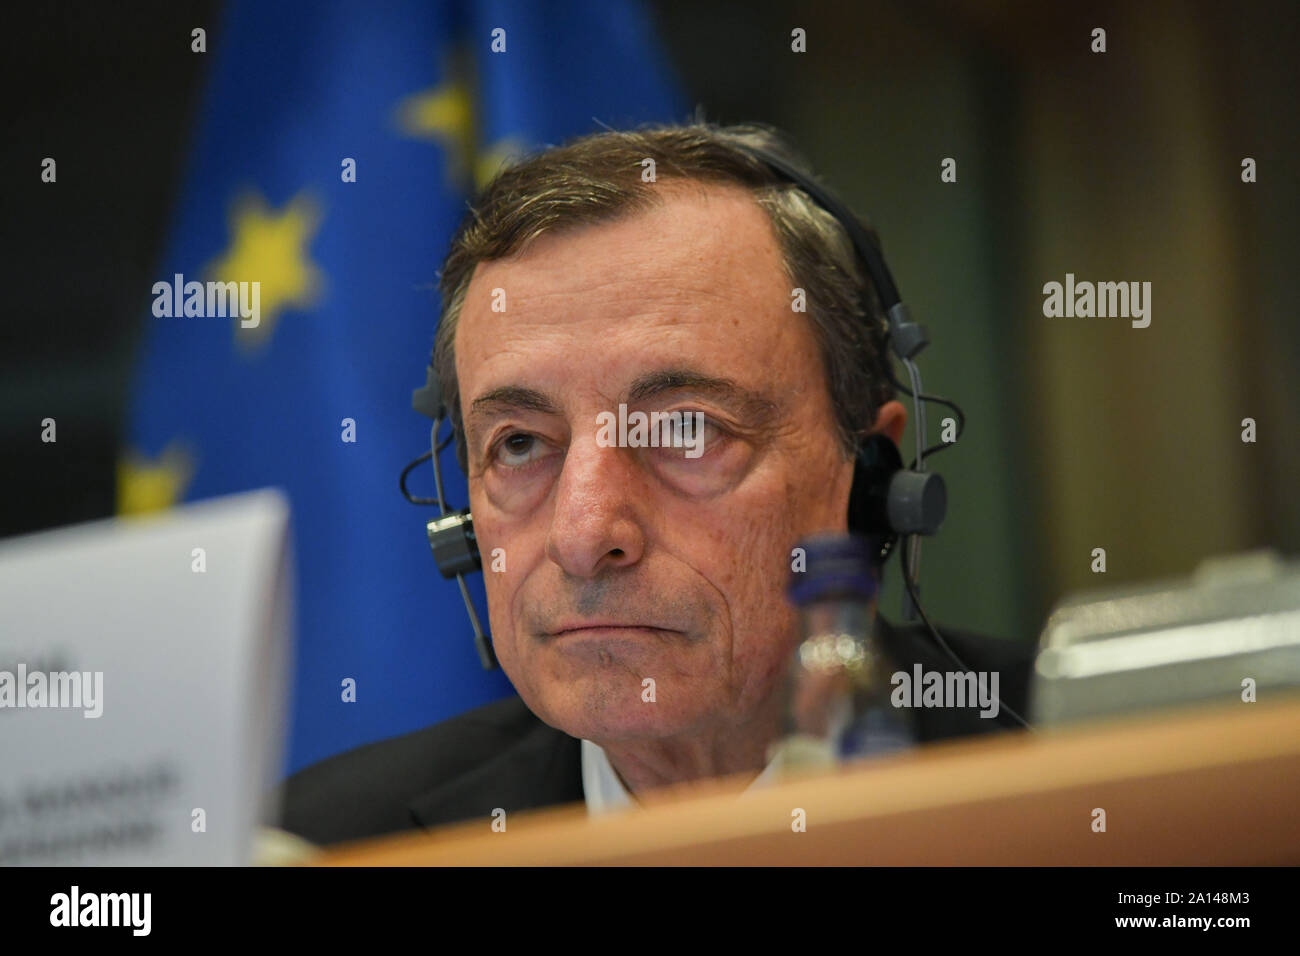 Brüssel, Belgien. 23 Sep, 2019. Mario Draghi, Präsident der Europäischen Zentralbank (EZB), nimmt an den monetären Dialog mit der Europäischen Wirtschafts- und Währungsausschuss des Europäischen Parlaments in Brüssel, Belgien, Sept. 23, 2019. Credit: Riccardo Pareggiani/Xinhua Stockfoto